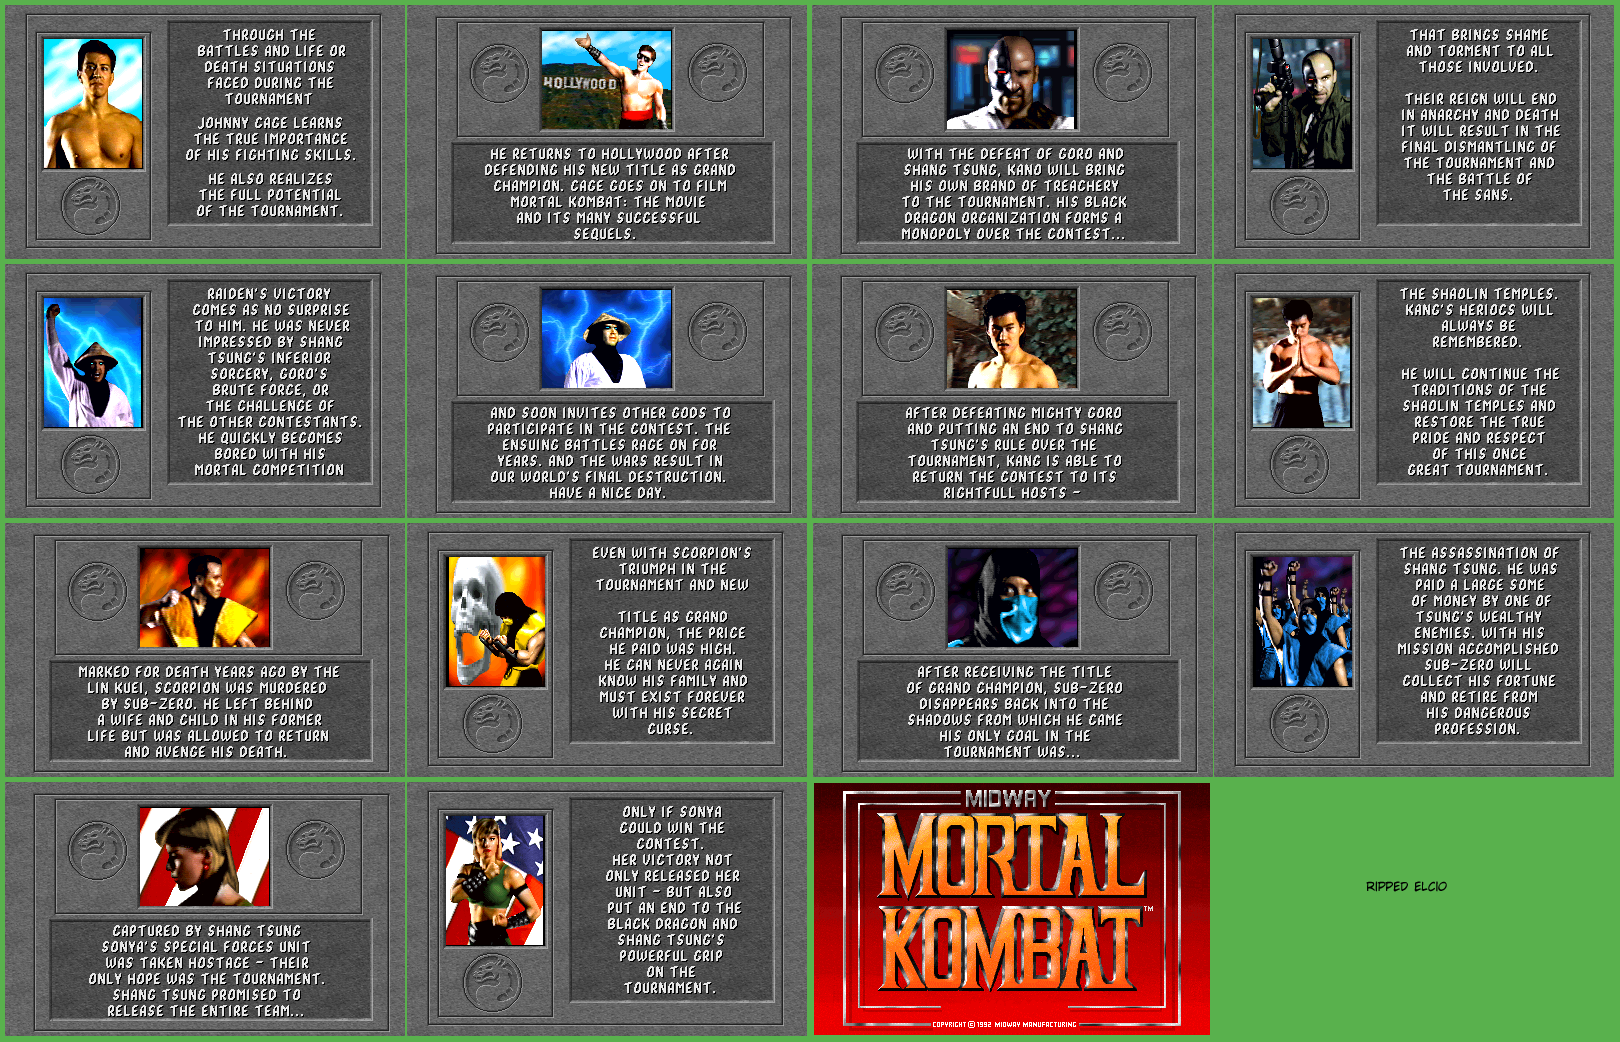 Mortal Kombat - Endings